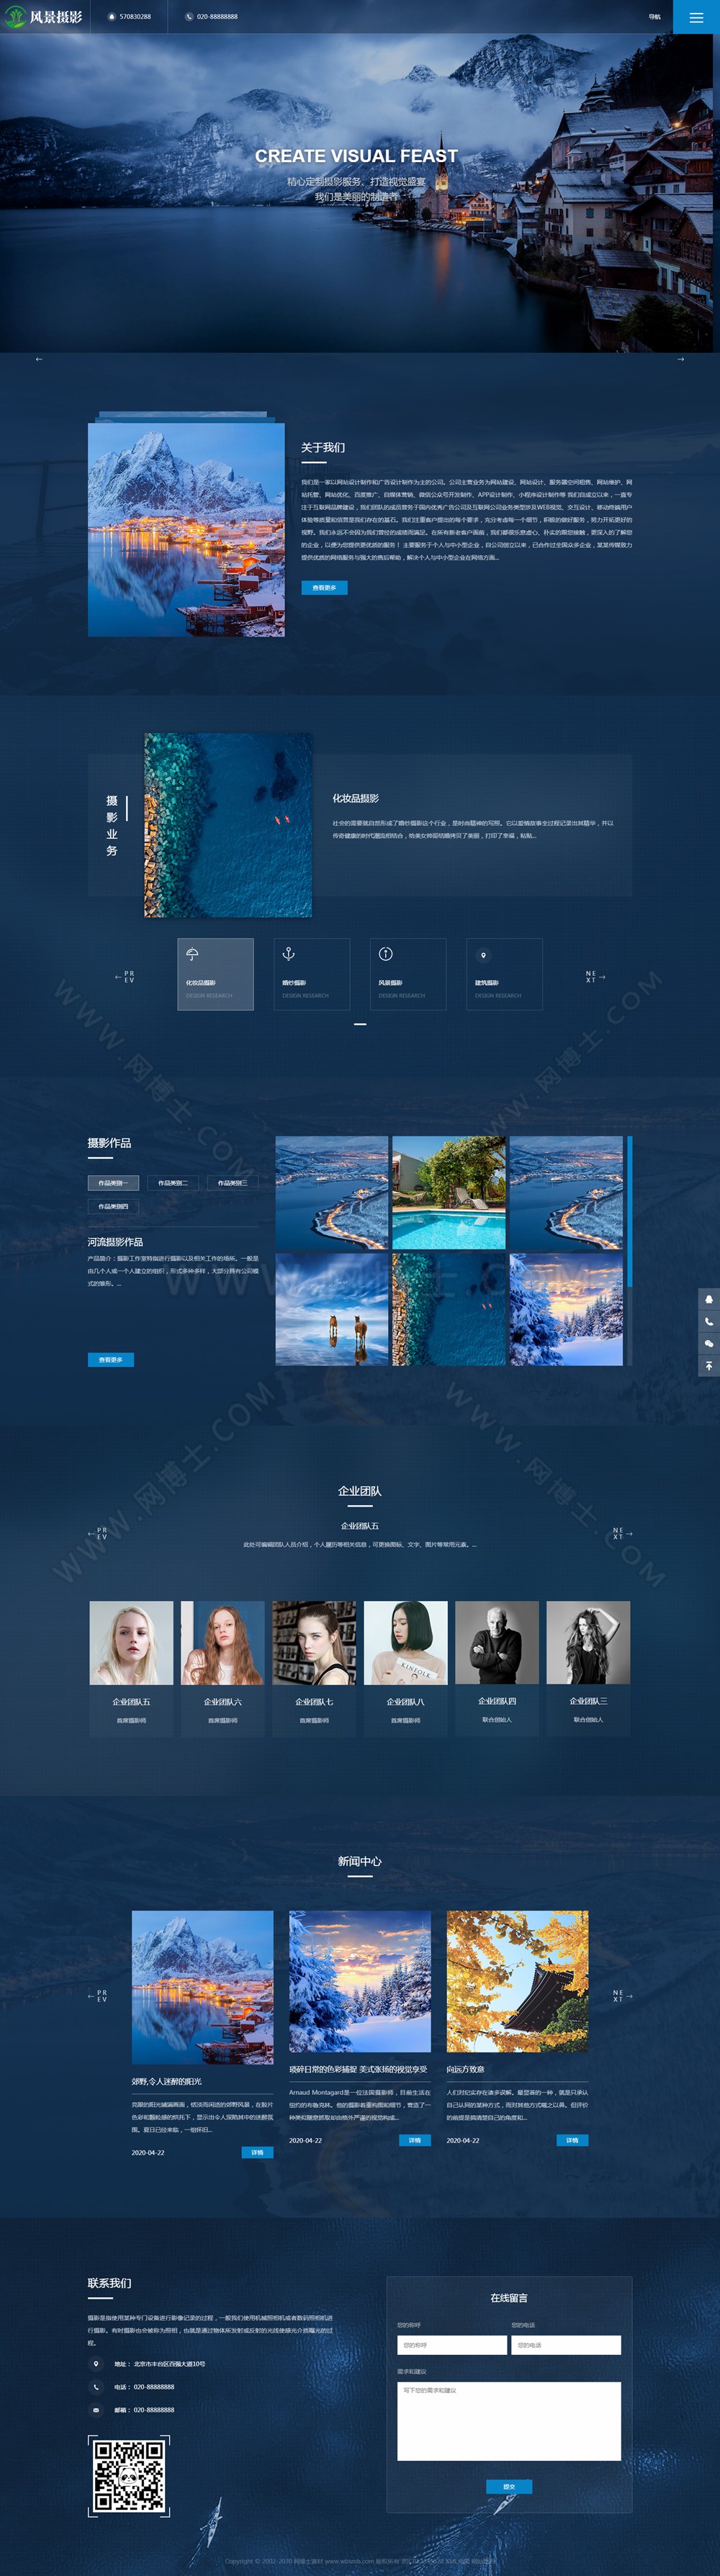 (自适应手机版)响应式摄影机构类网站织梦模板 HTML5高端蓝色户外摄影拍摄网站源码